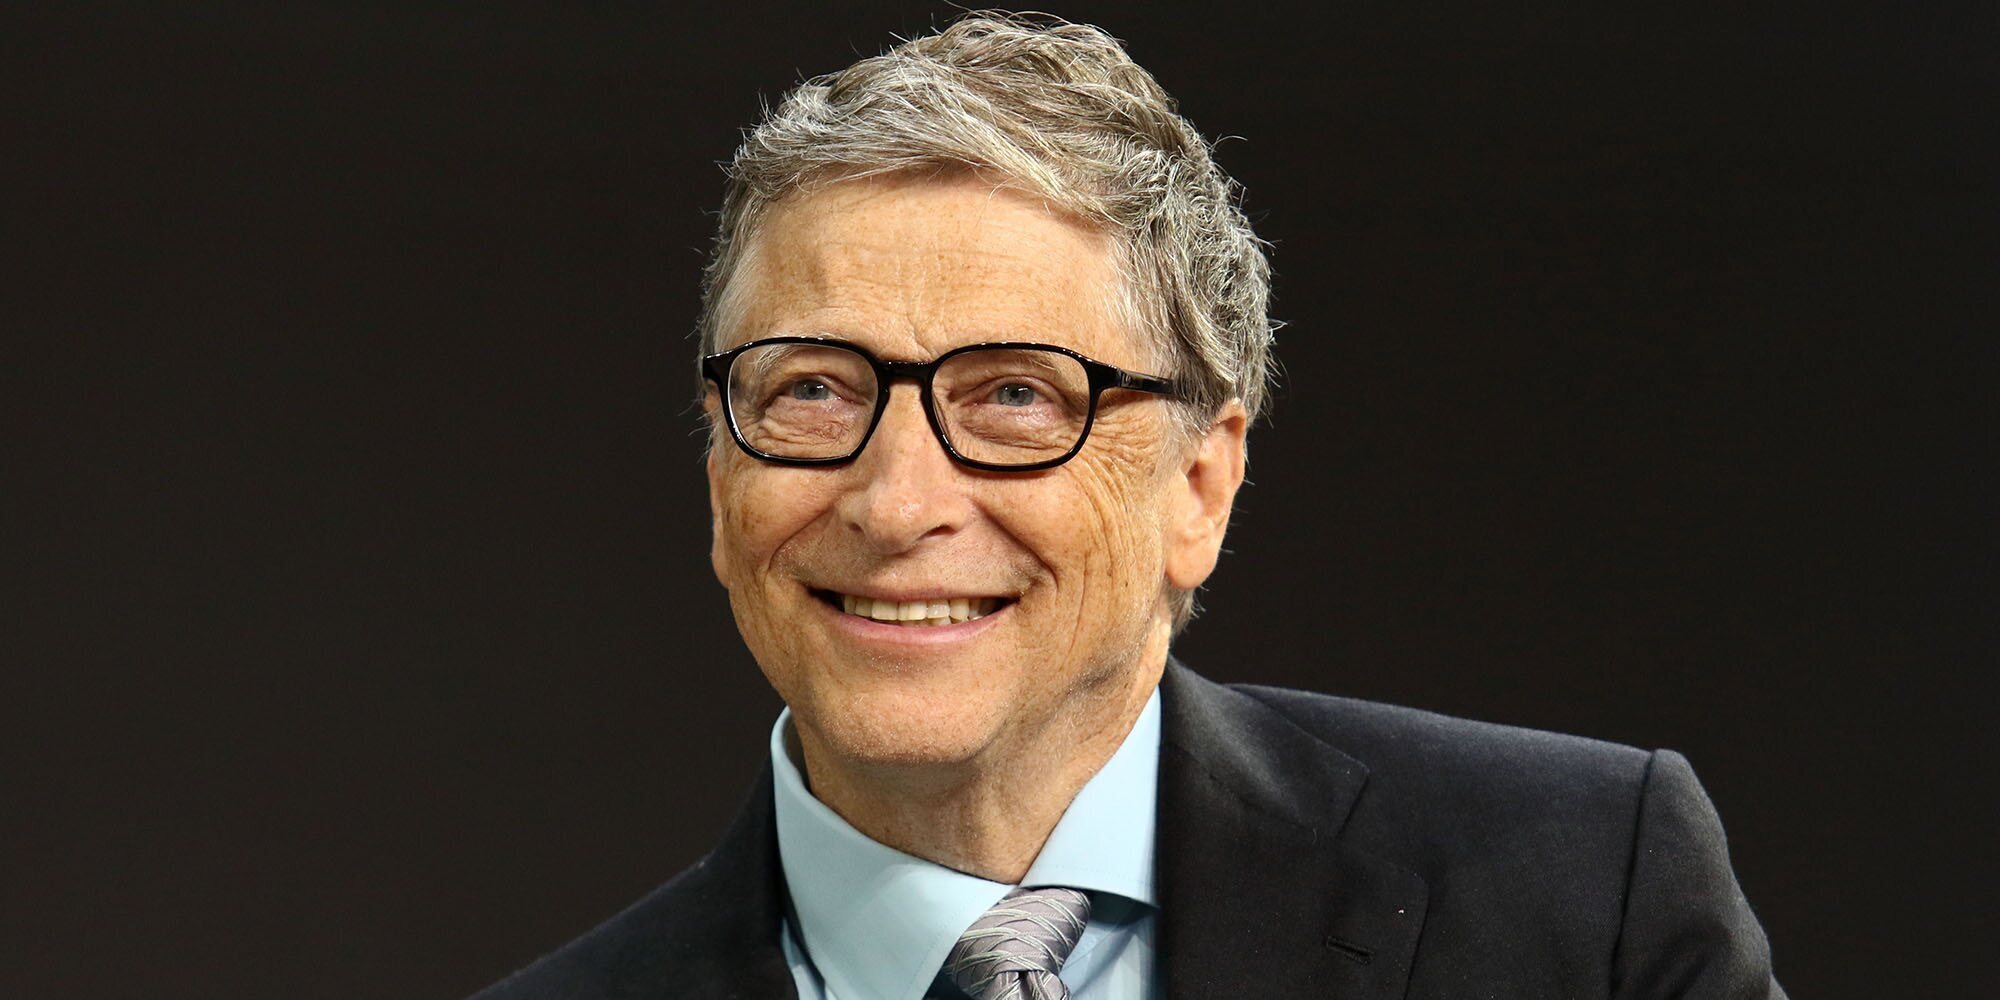 Bill Gates confiesa que fue él quien arruinó su matrimonio